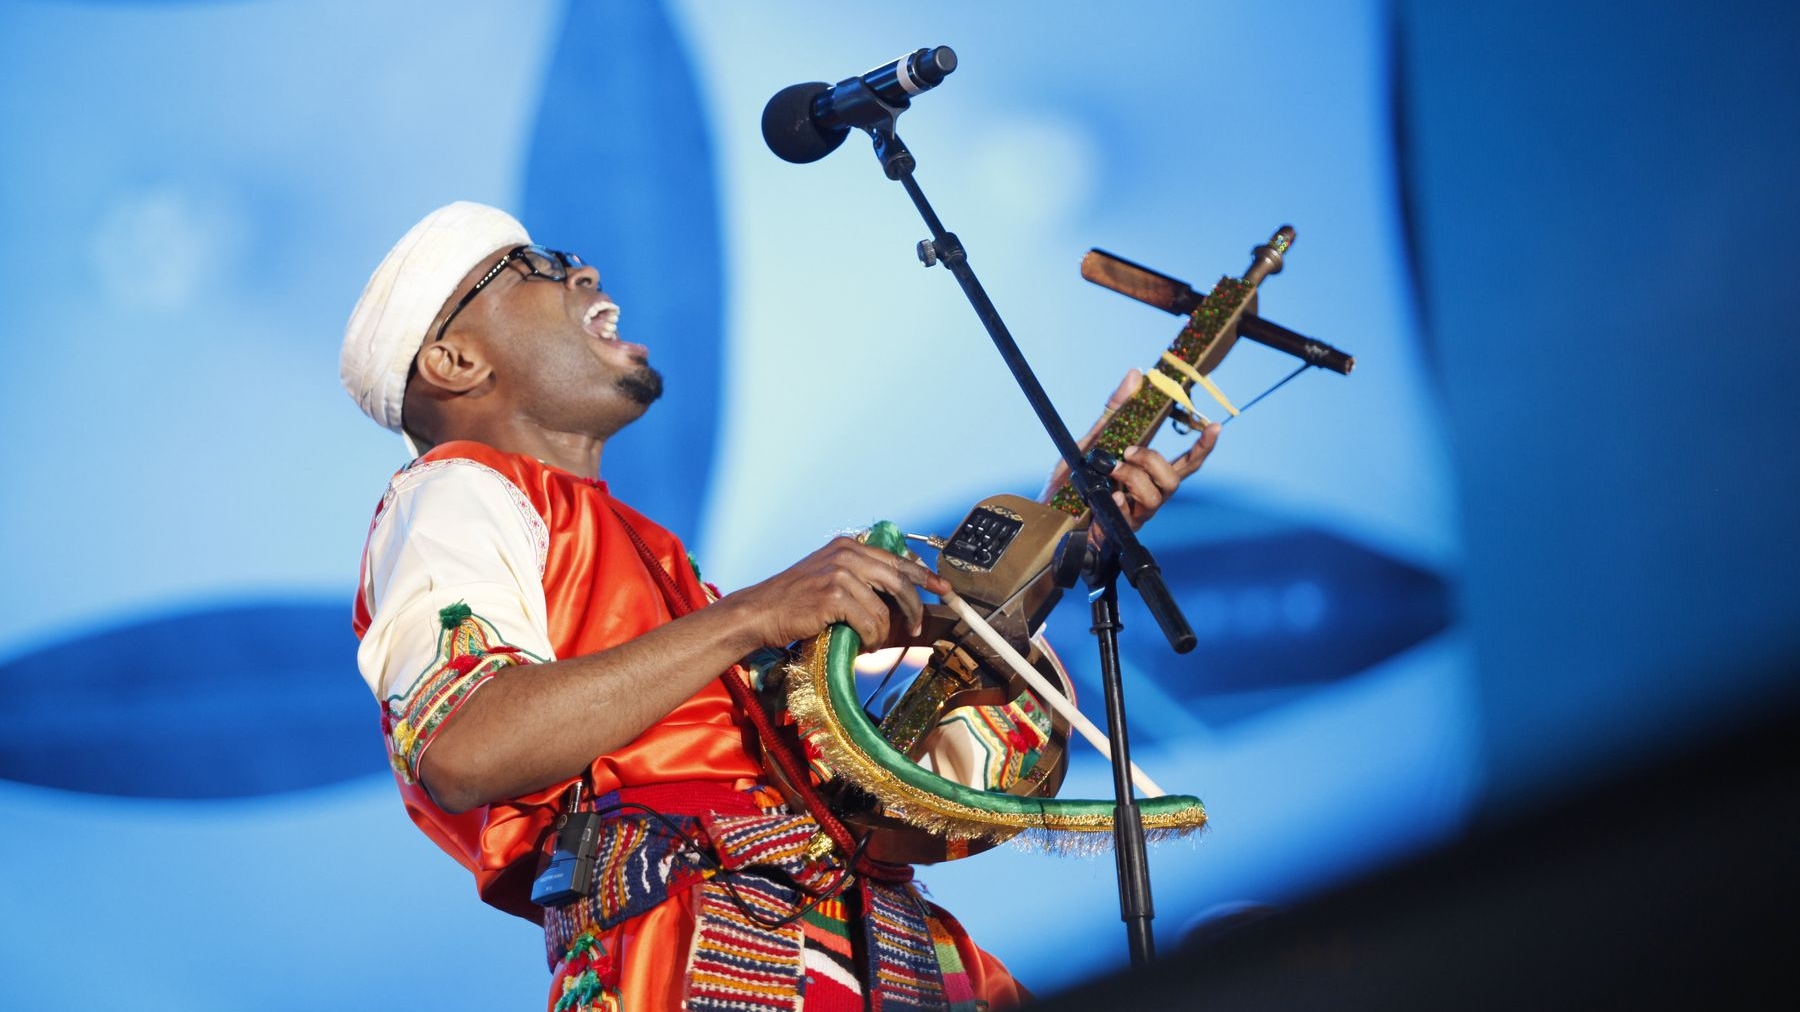 Le groupe porte bien son nom de "Ribab" à la manière dont il met à l'honneur les sonorités de cet instrument traditionnel amazigh
